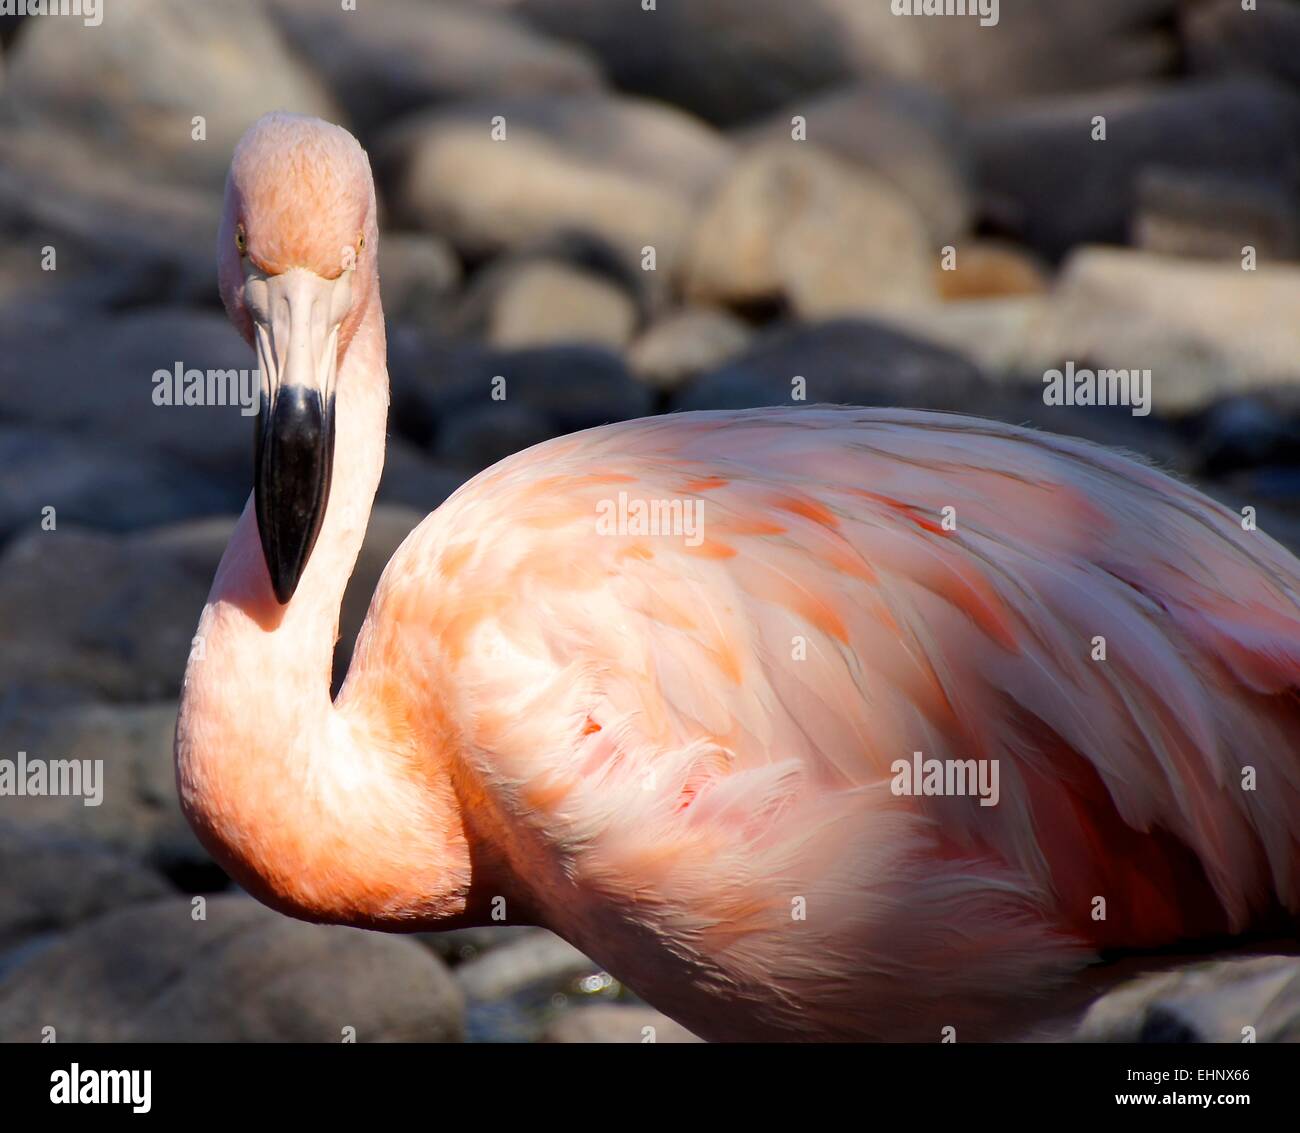 Flamingo taken at the Ritz Carlton Hotel, Bahrain Stock Photo